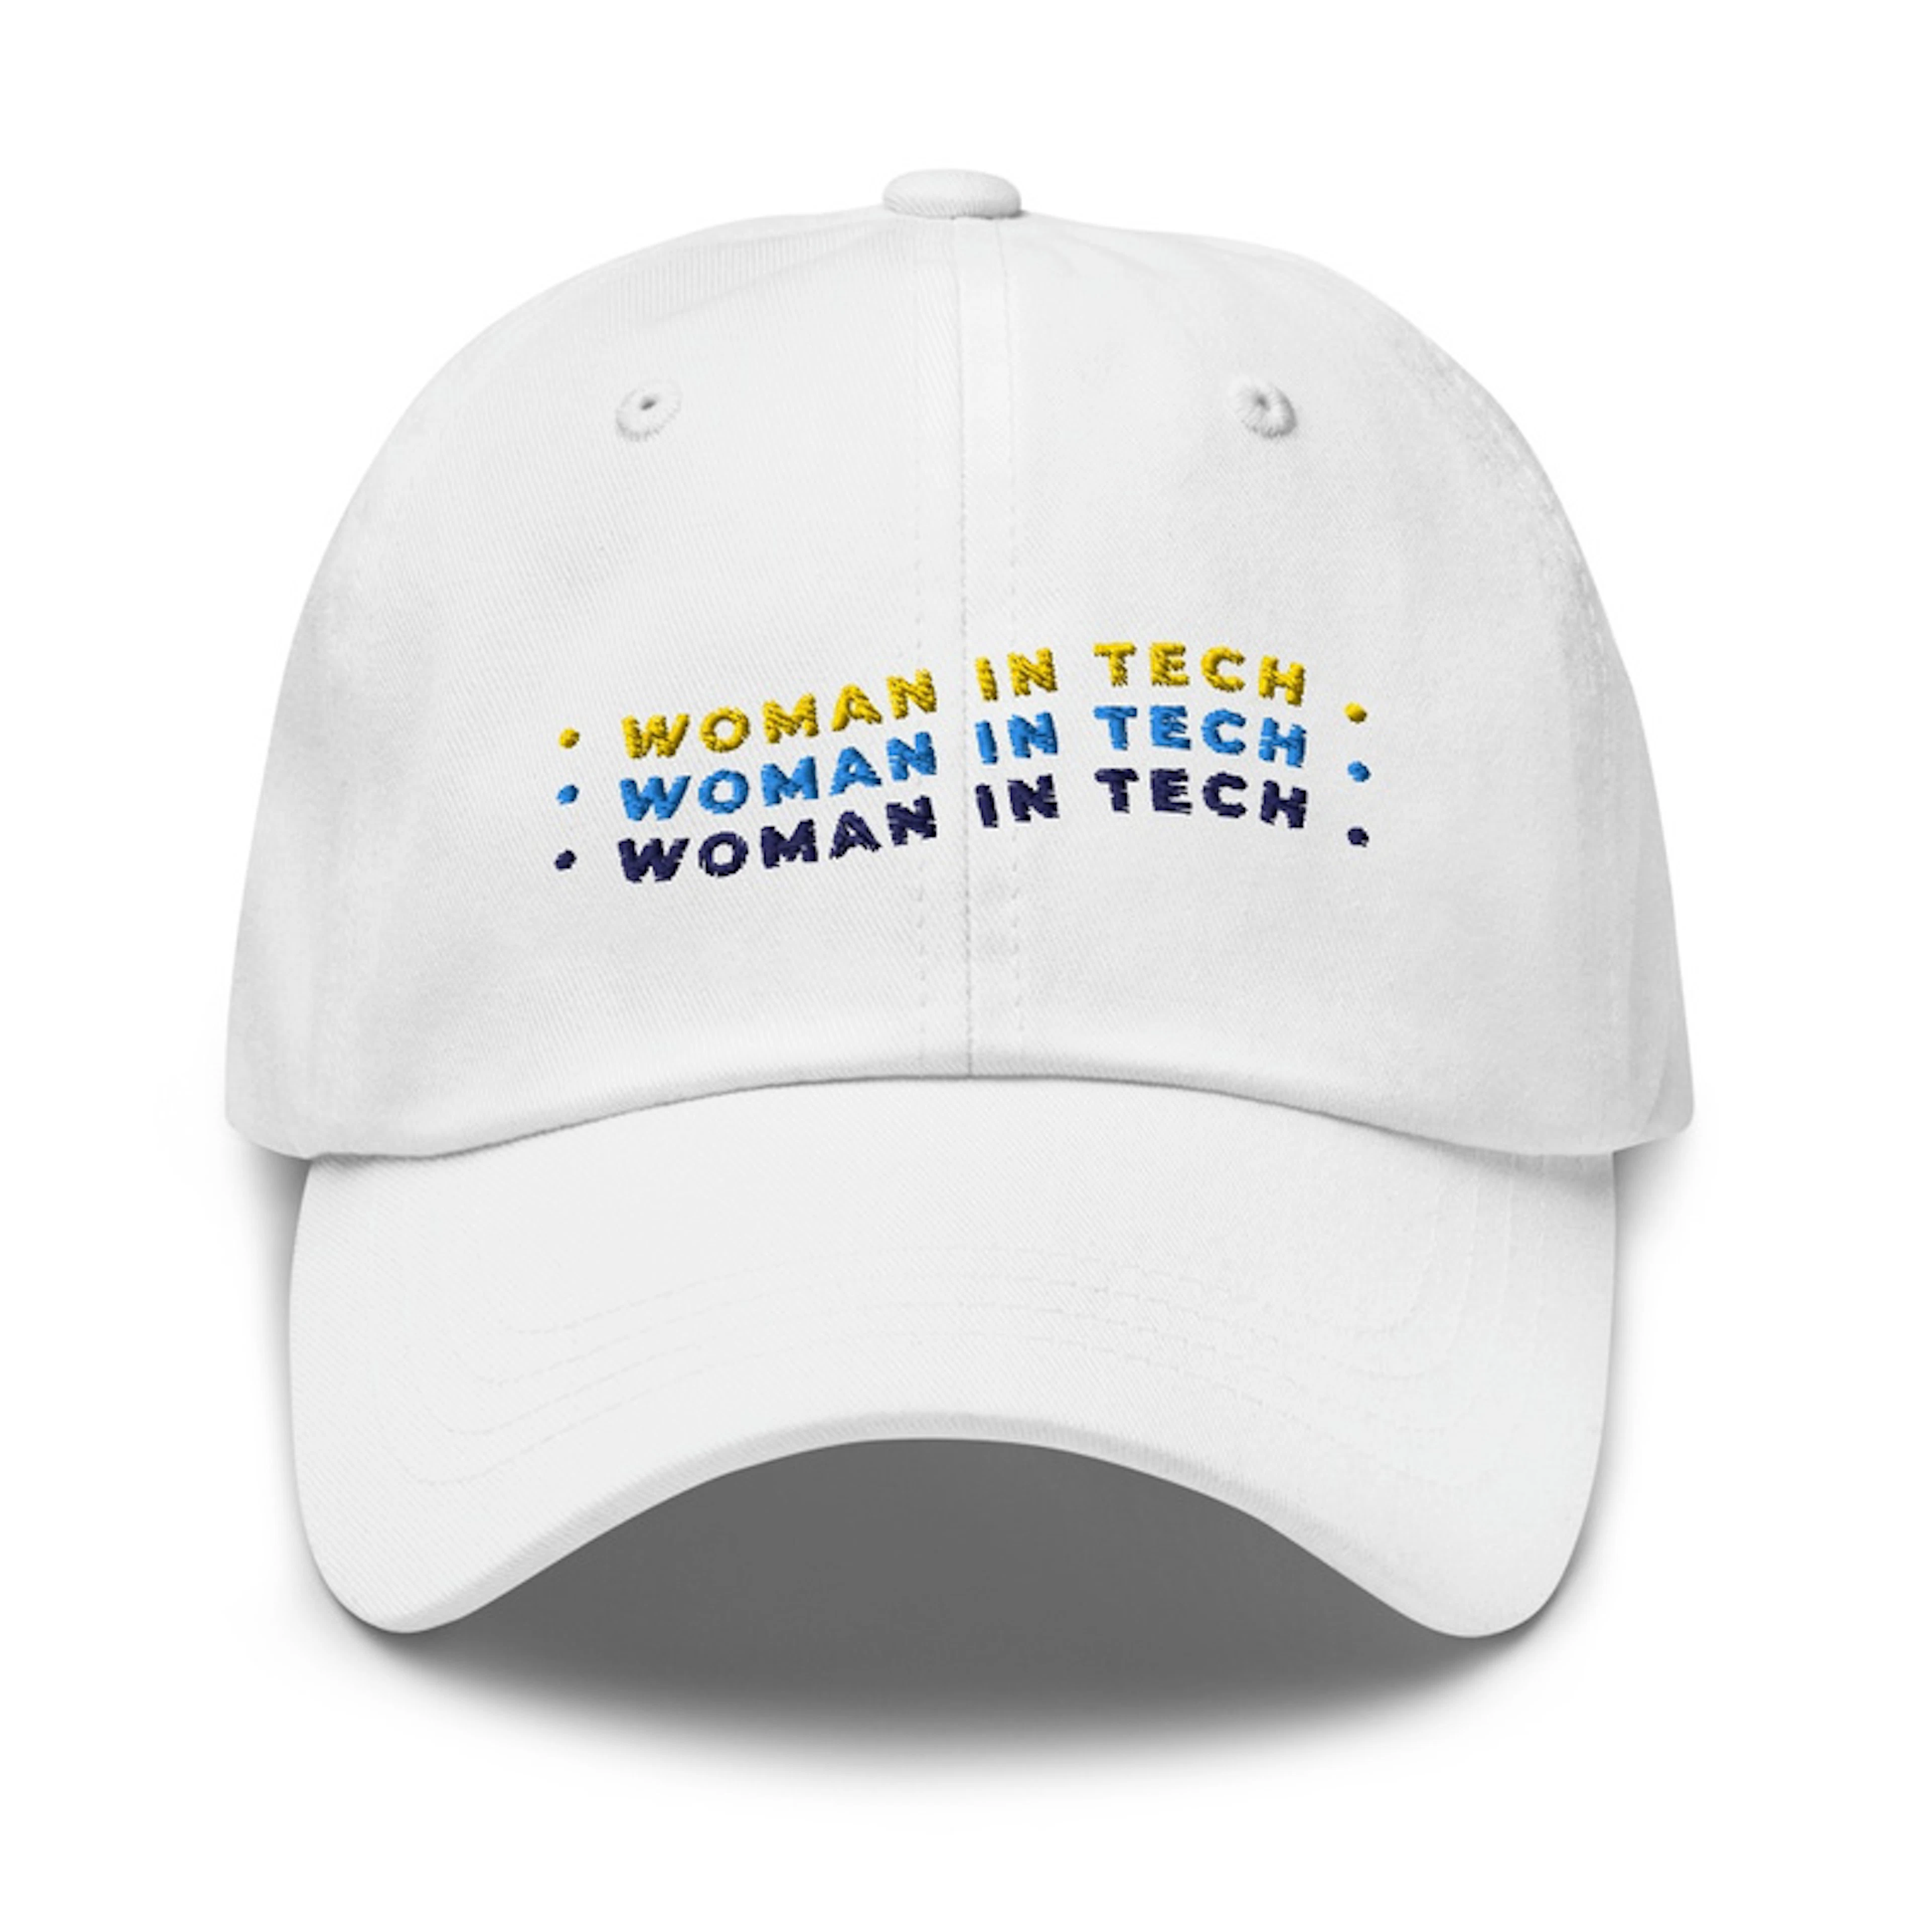 Woman in tech cap